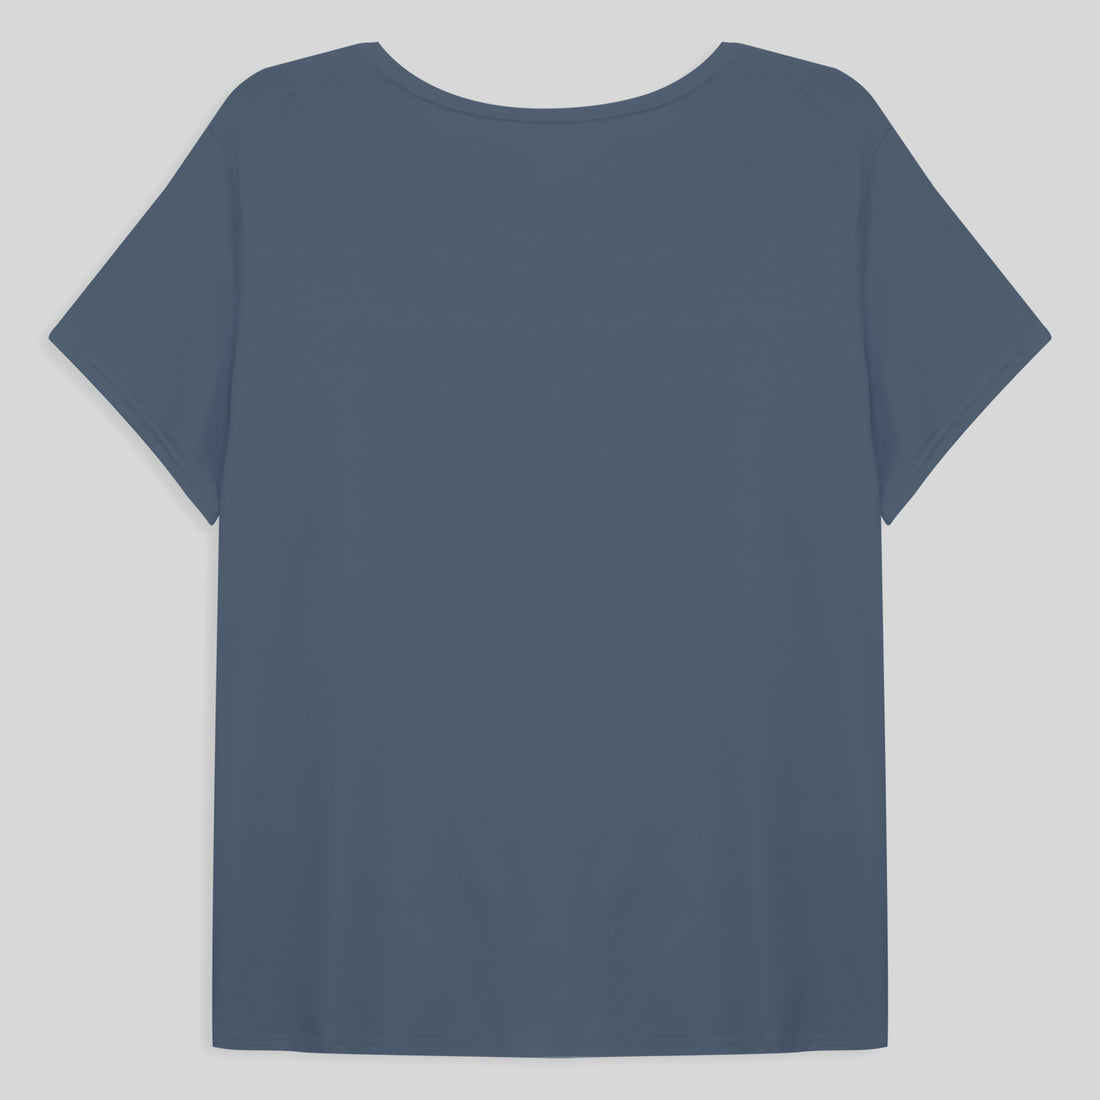 Tech T-Shirt Modal Plus Size Feminina - Azul Cobalto